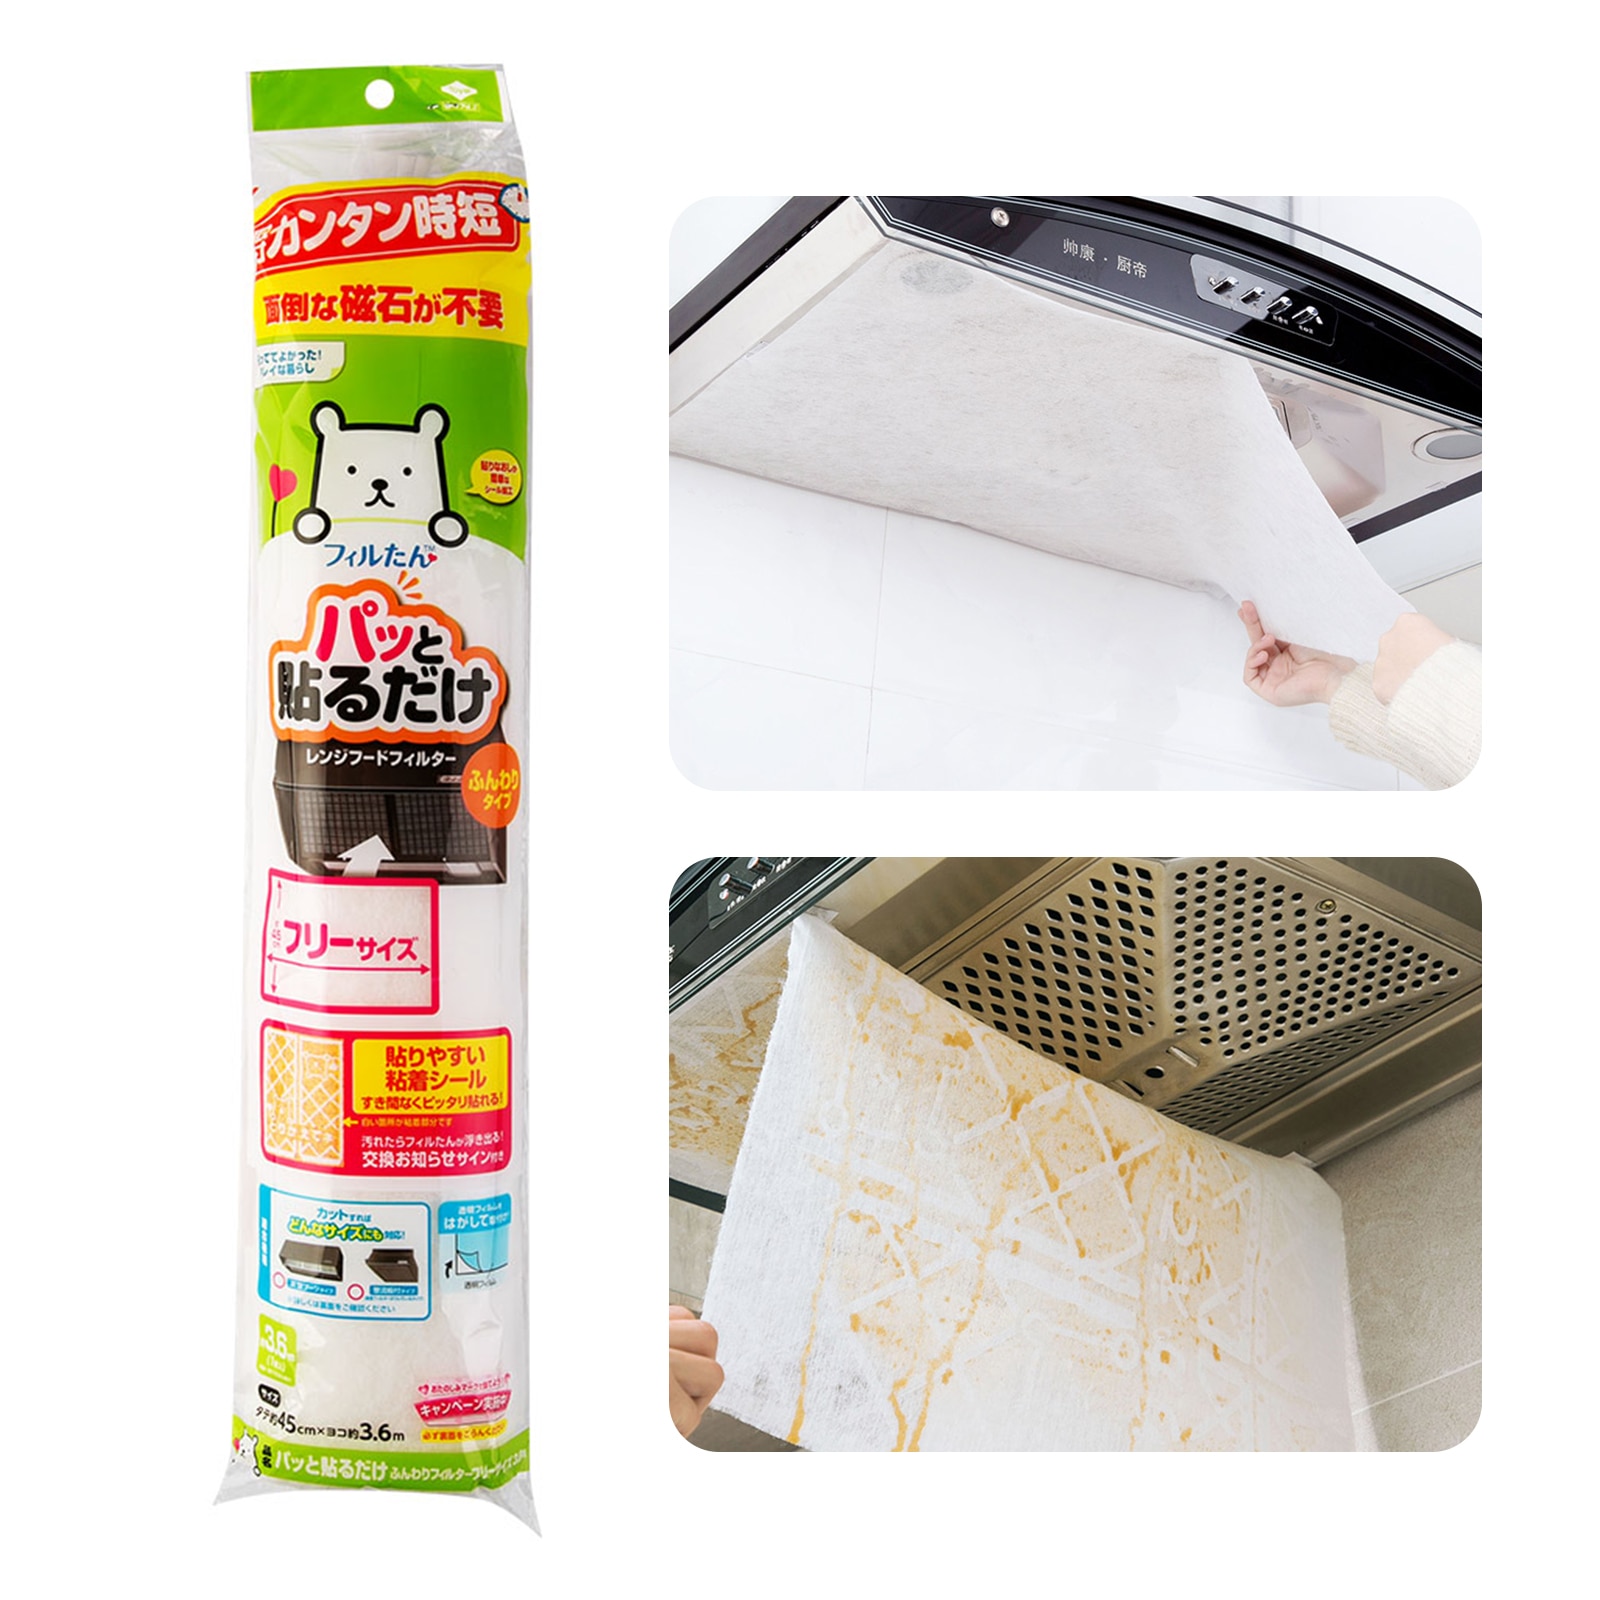 Universal emhætte filter mesh brandhæmmende madlavning forurening filter mesh papir klud køkkenartikler